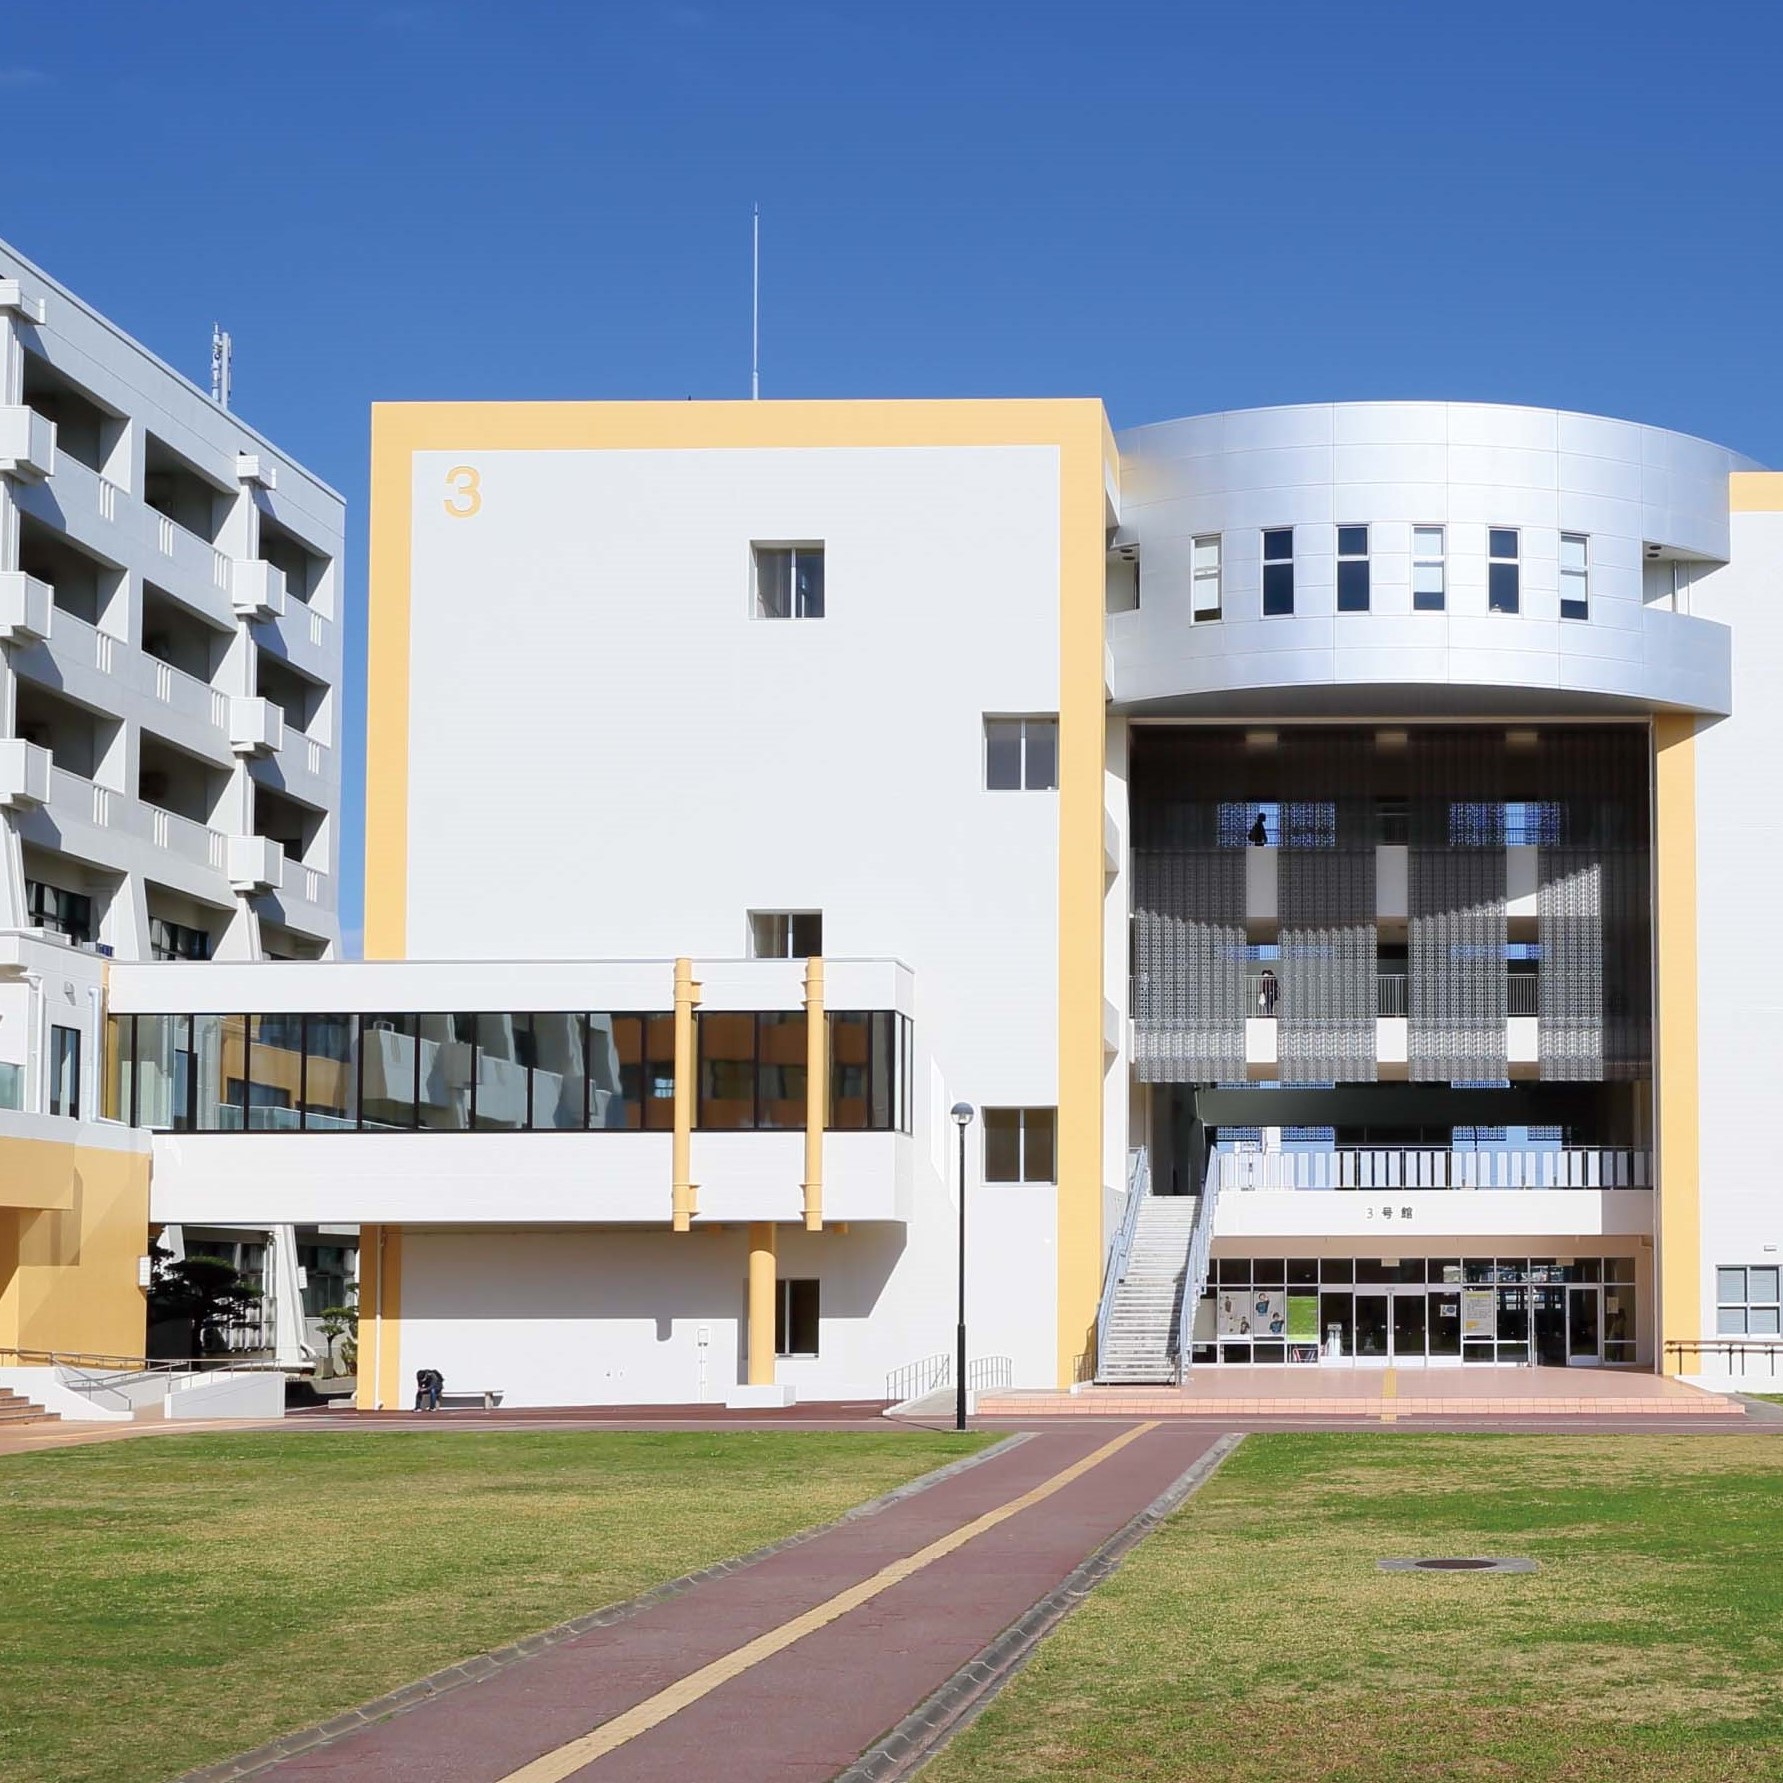 沖縄国際大学のオープンキャンパス